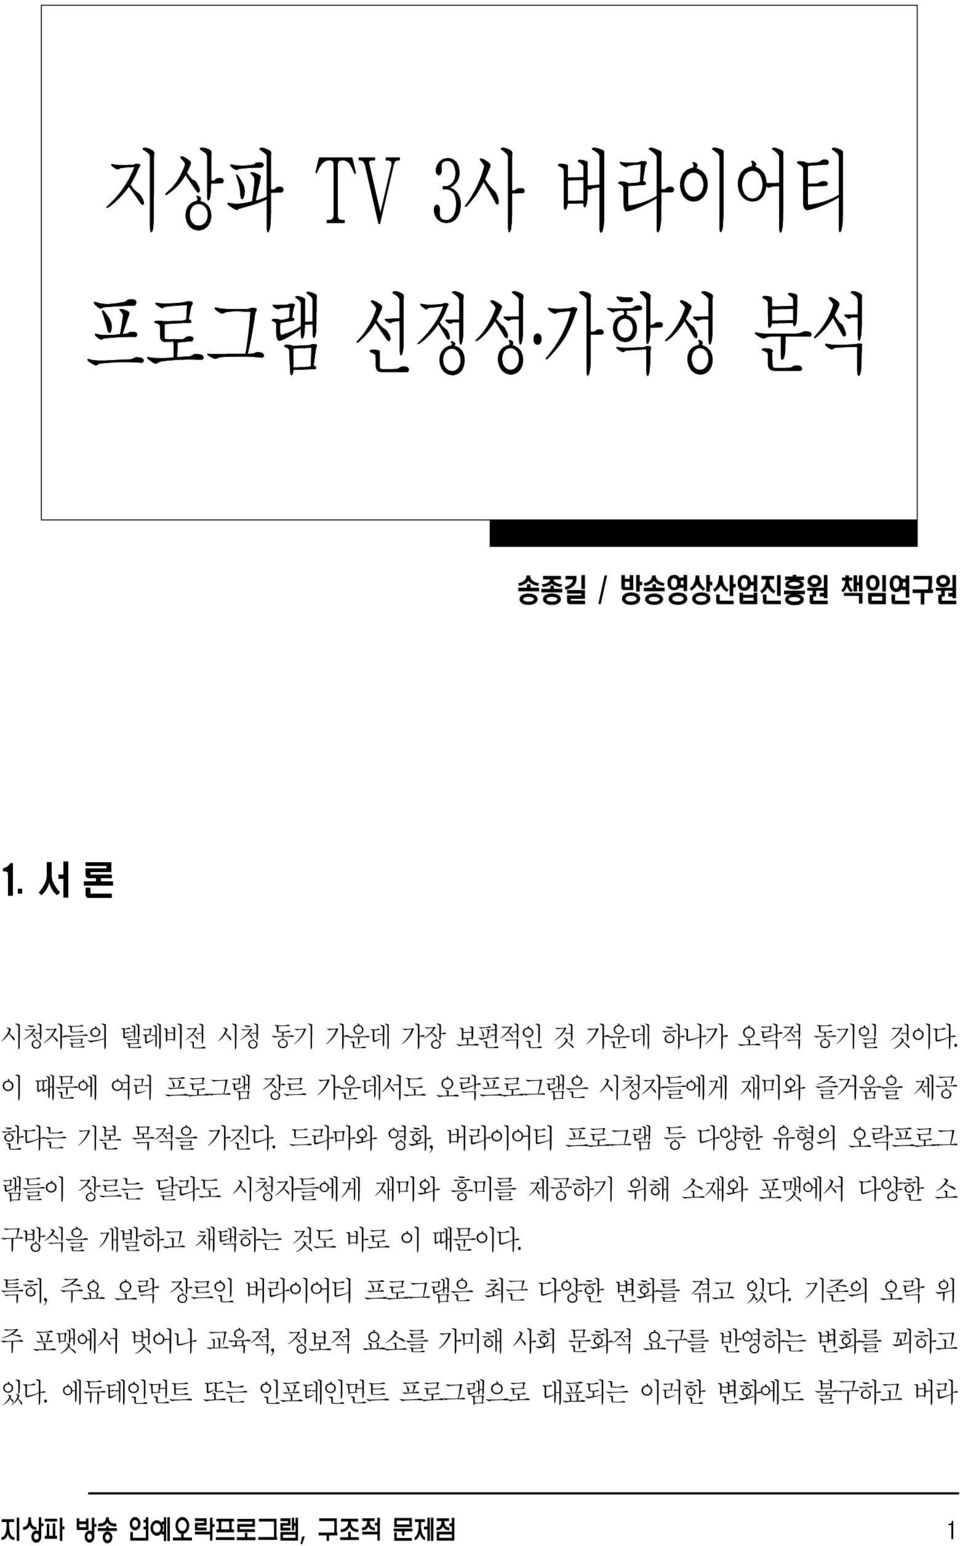 송종길 / 방송영상산업진흥원